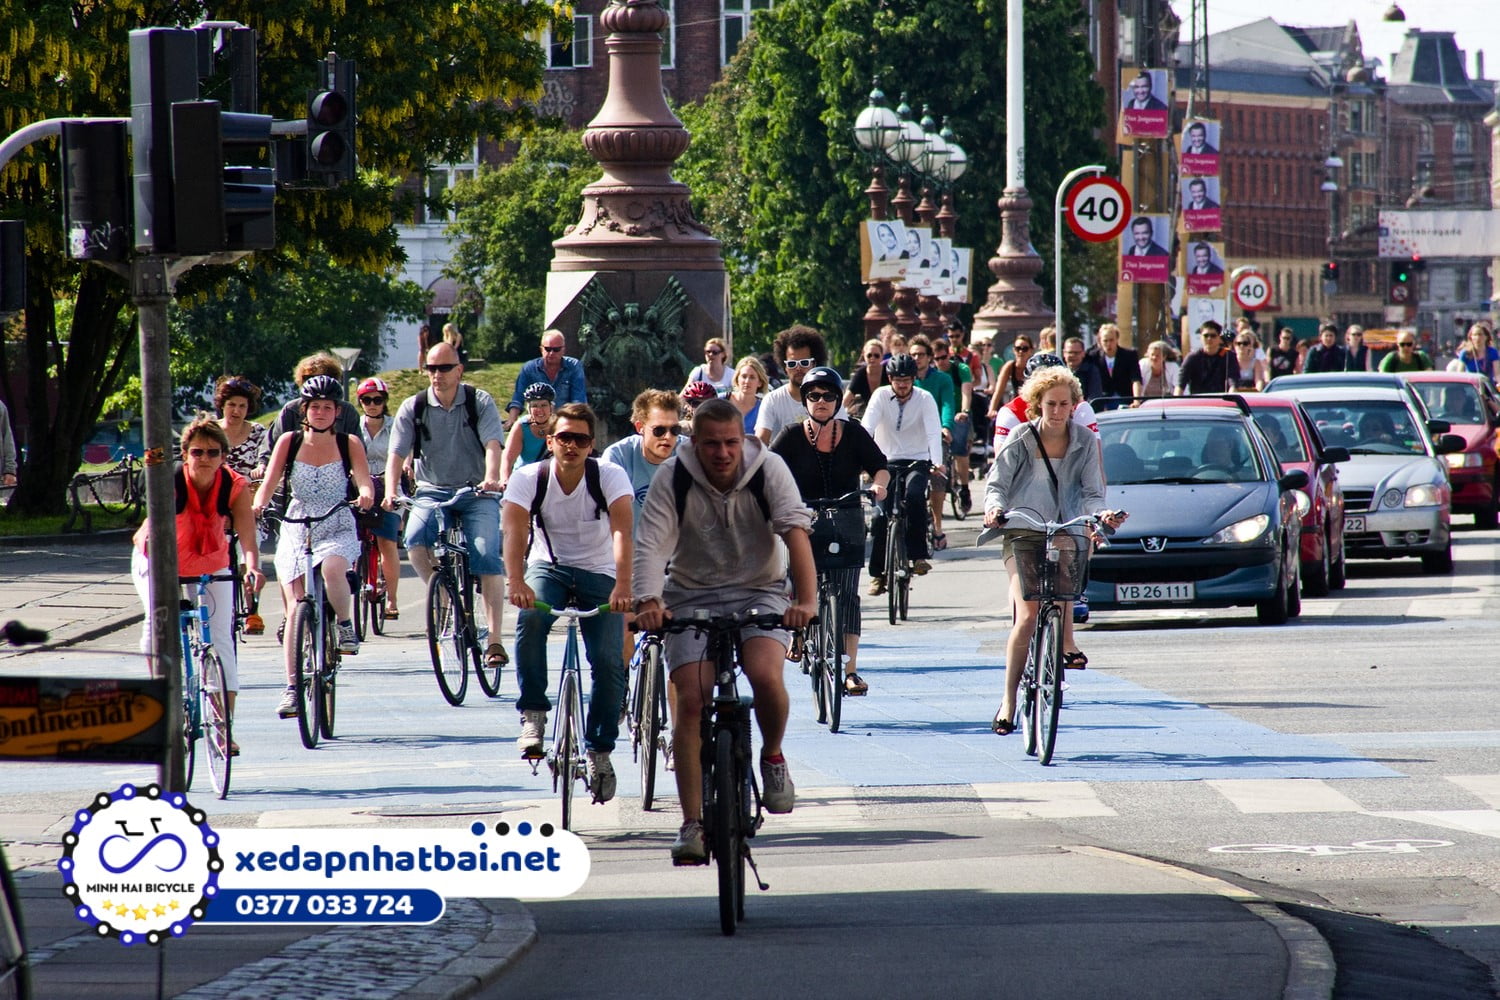 Bạn nên lái xe đạp đi sát lề bên phải để an toàn khi tham gia giao thông